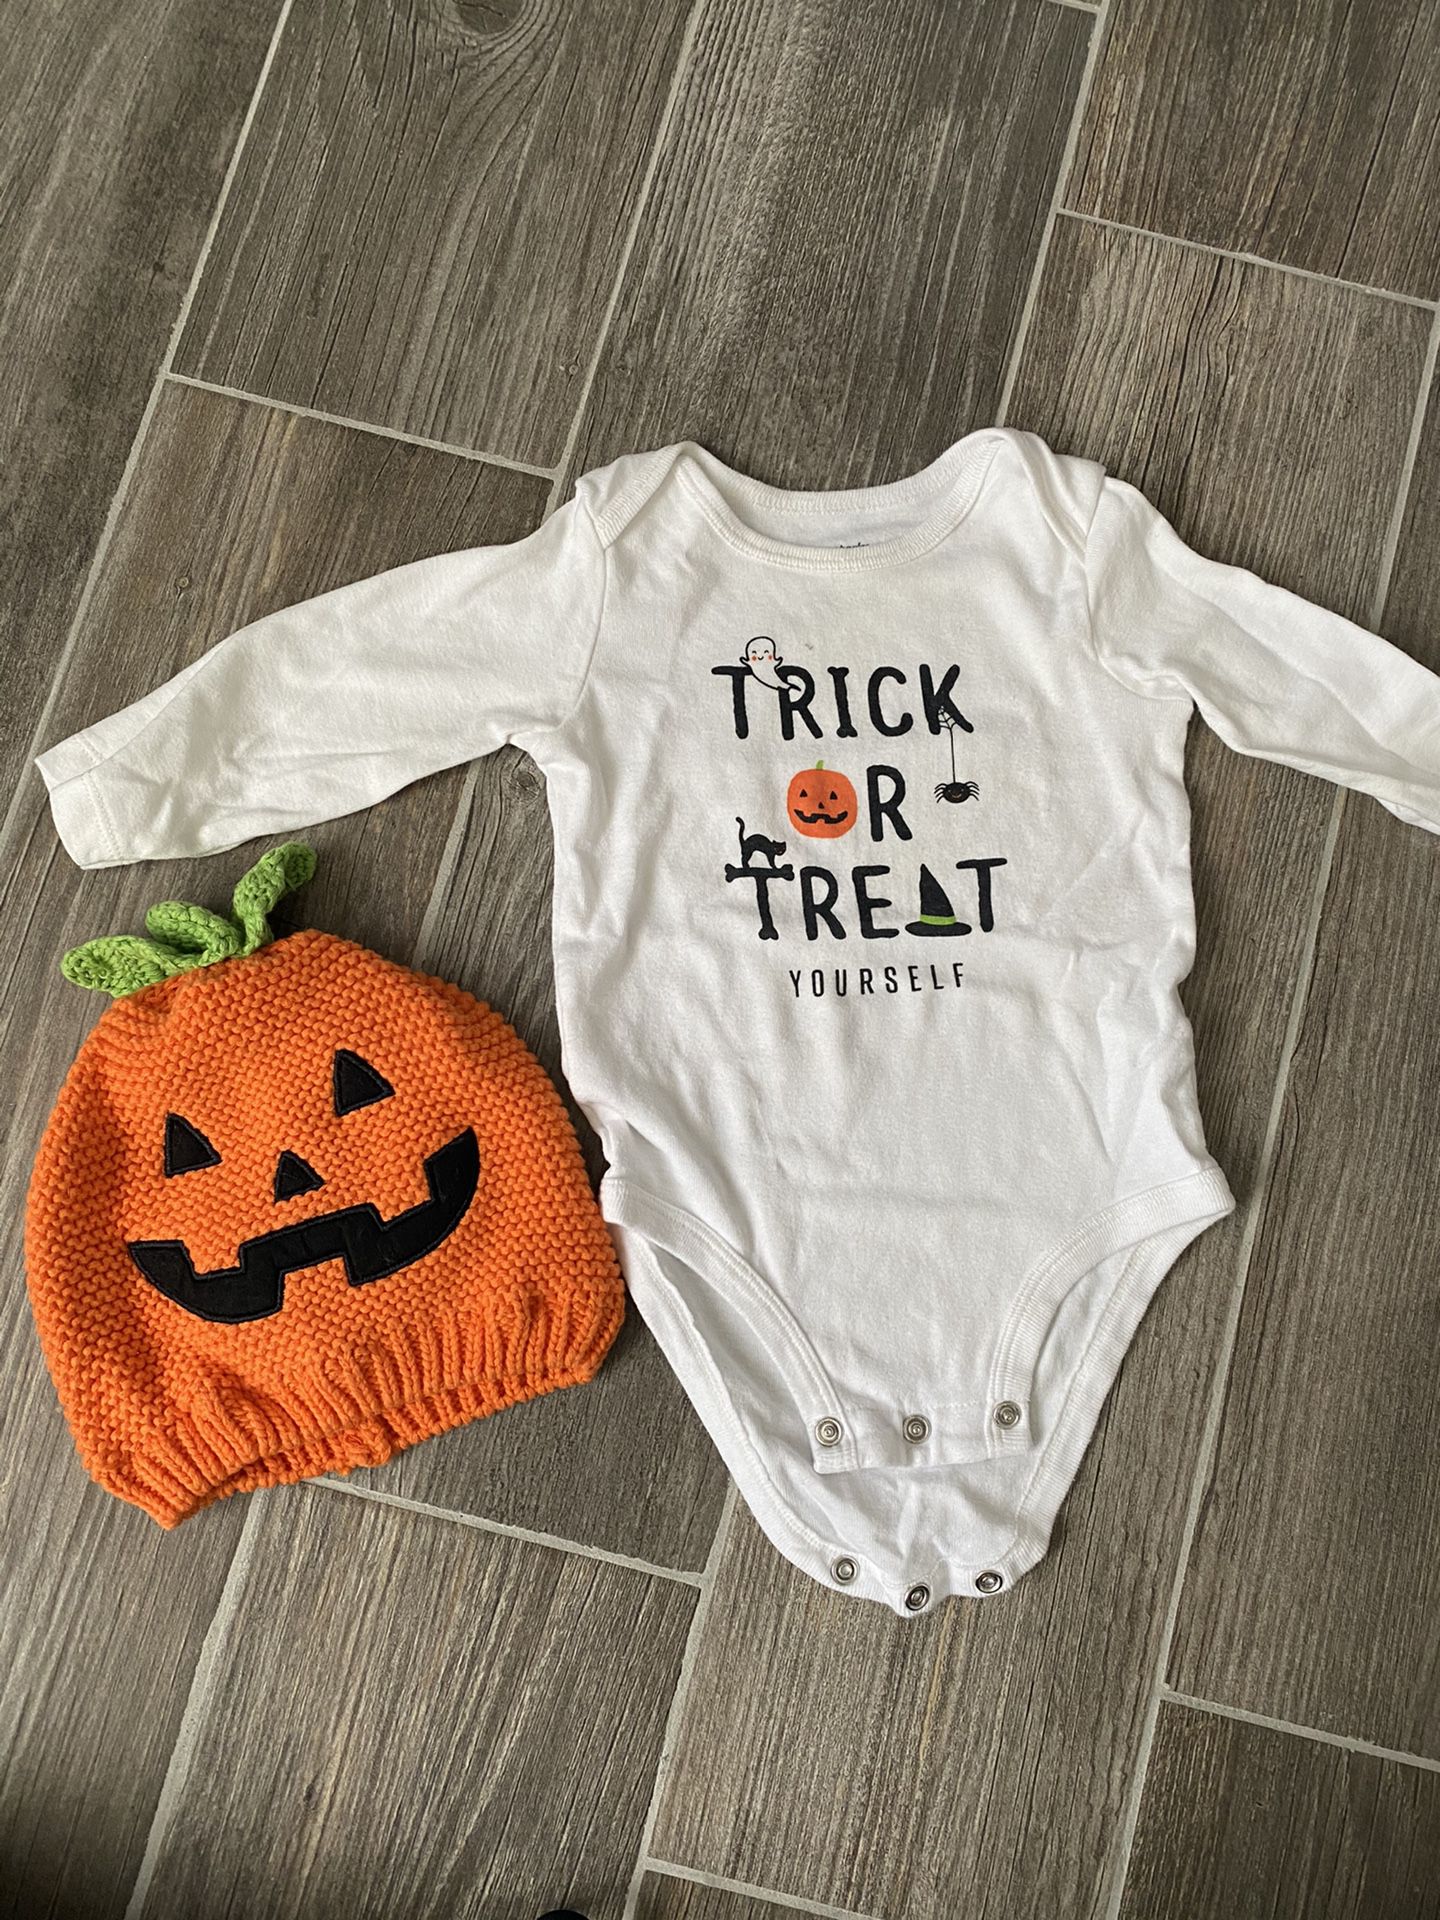 Halloween baby pjs/costume